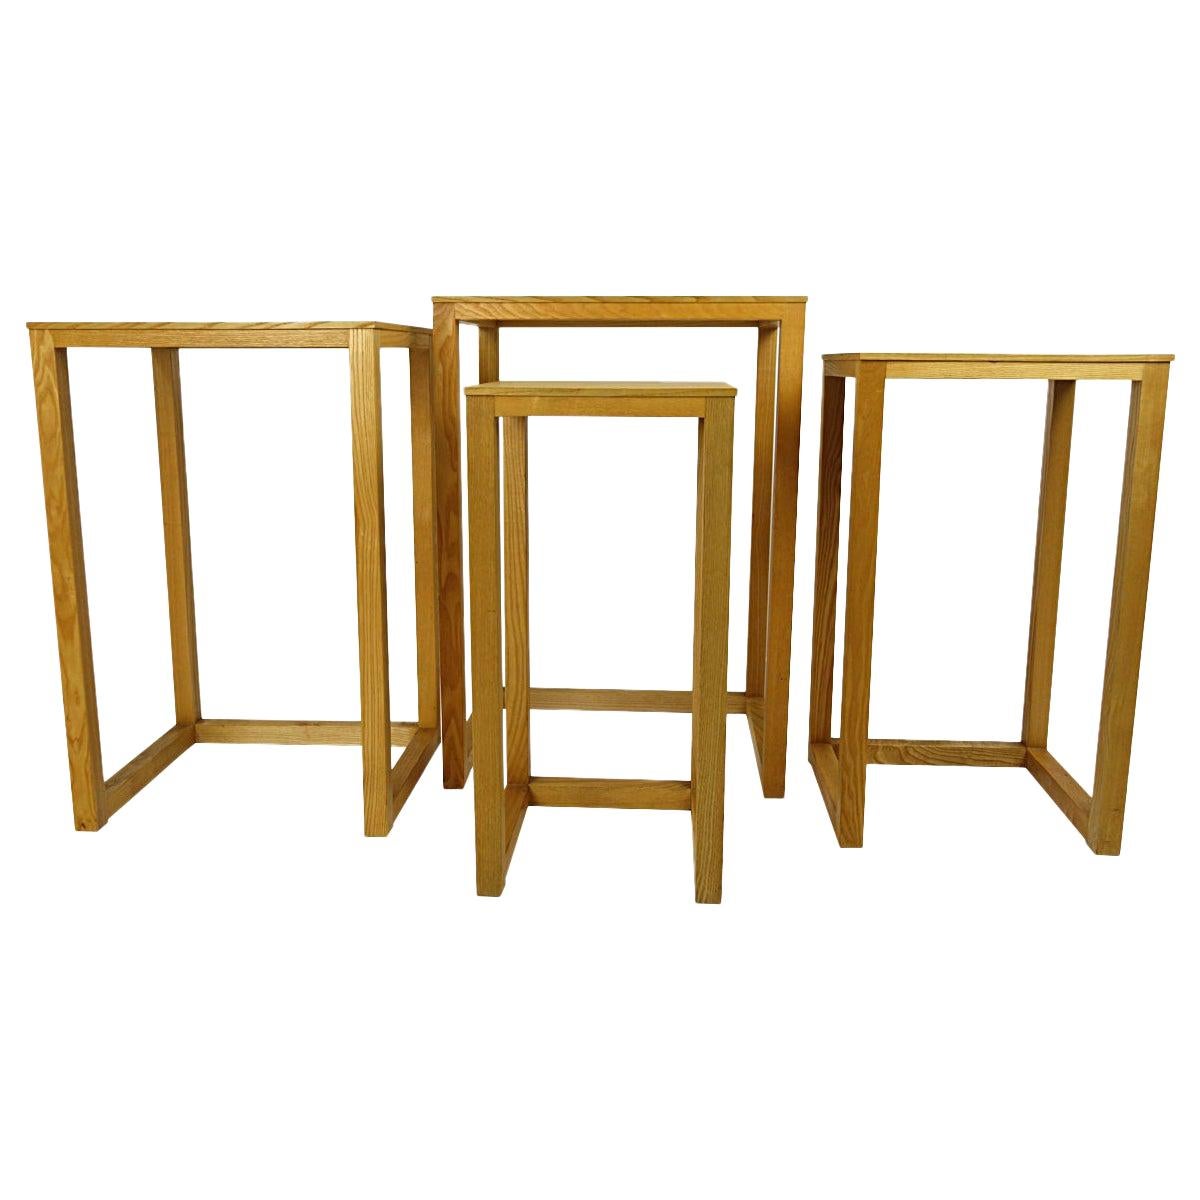 Set of Four Oakwood Nesting Tables by Josef Hoffmann for Wittmann